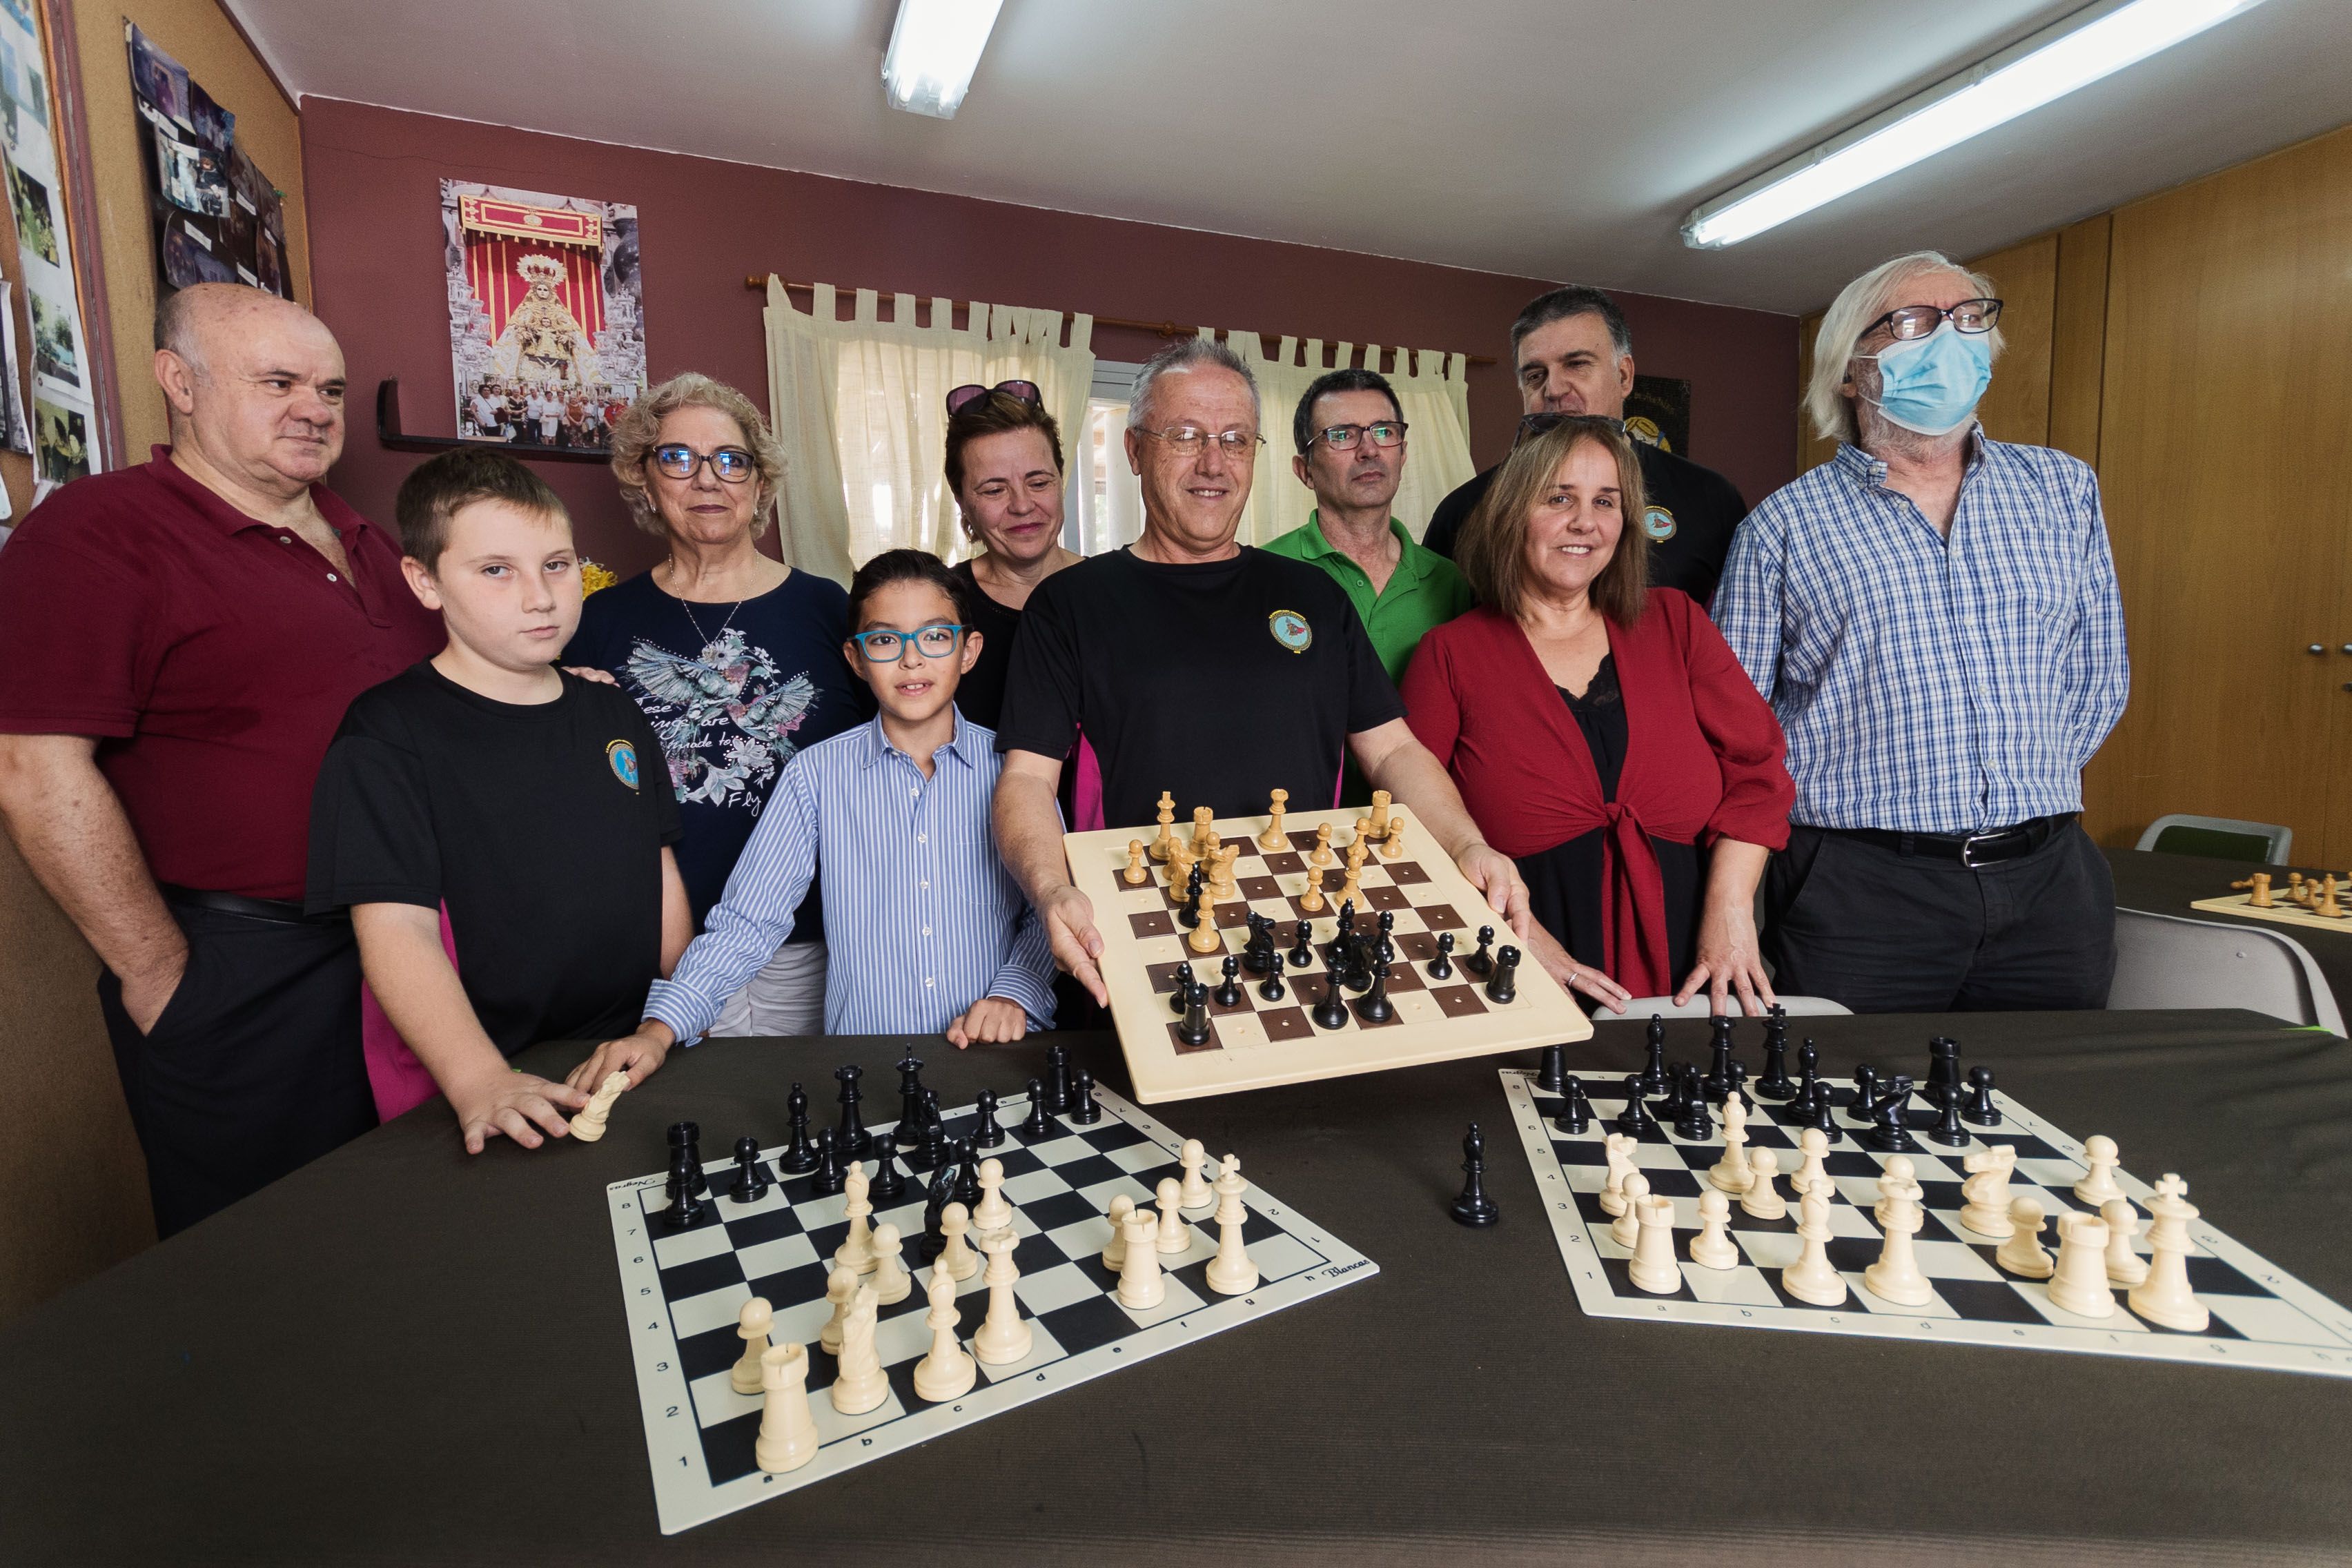 Jaque mate en dos jugadas: el ajedrez tiene dos cumpleaños